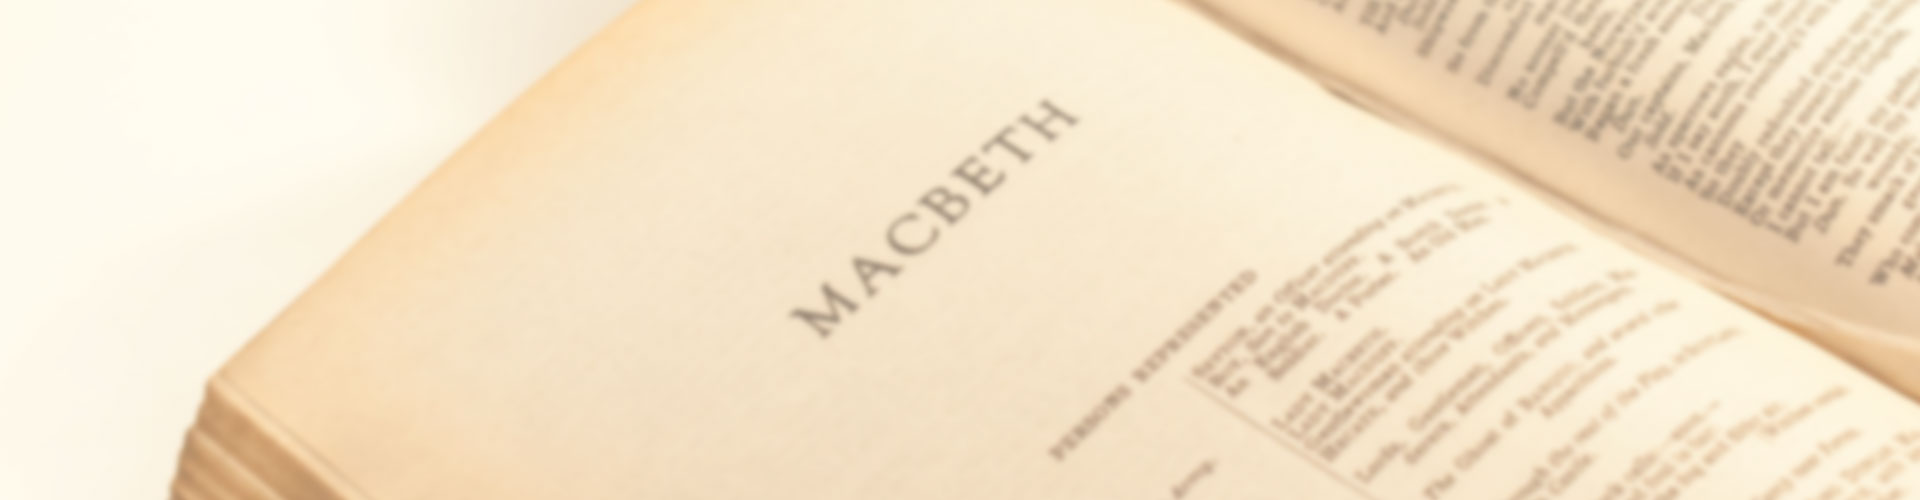 IMG: Background image of Shakespeare novel (MACBETH)